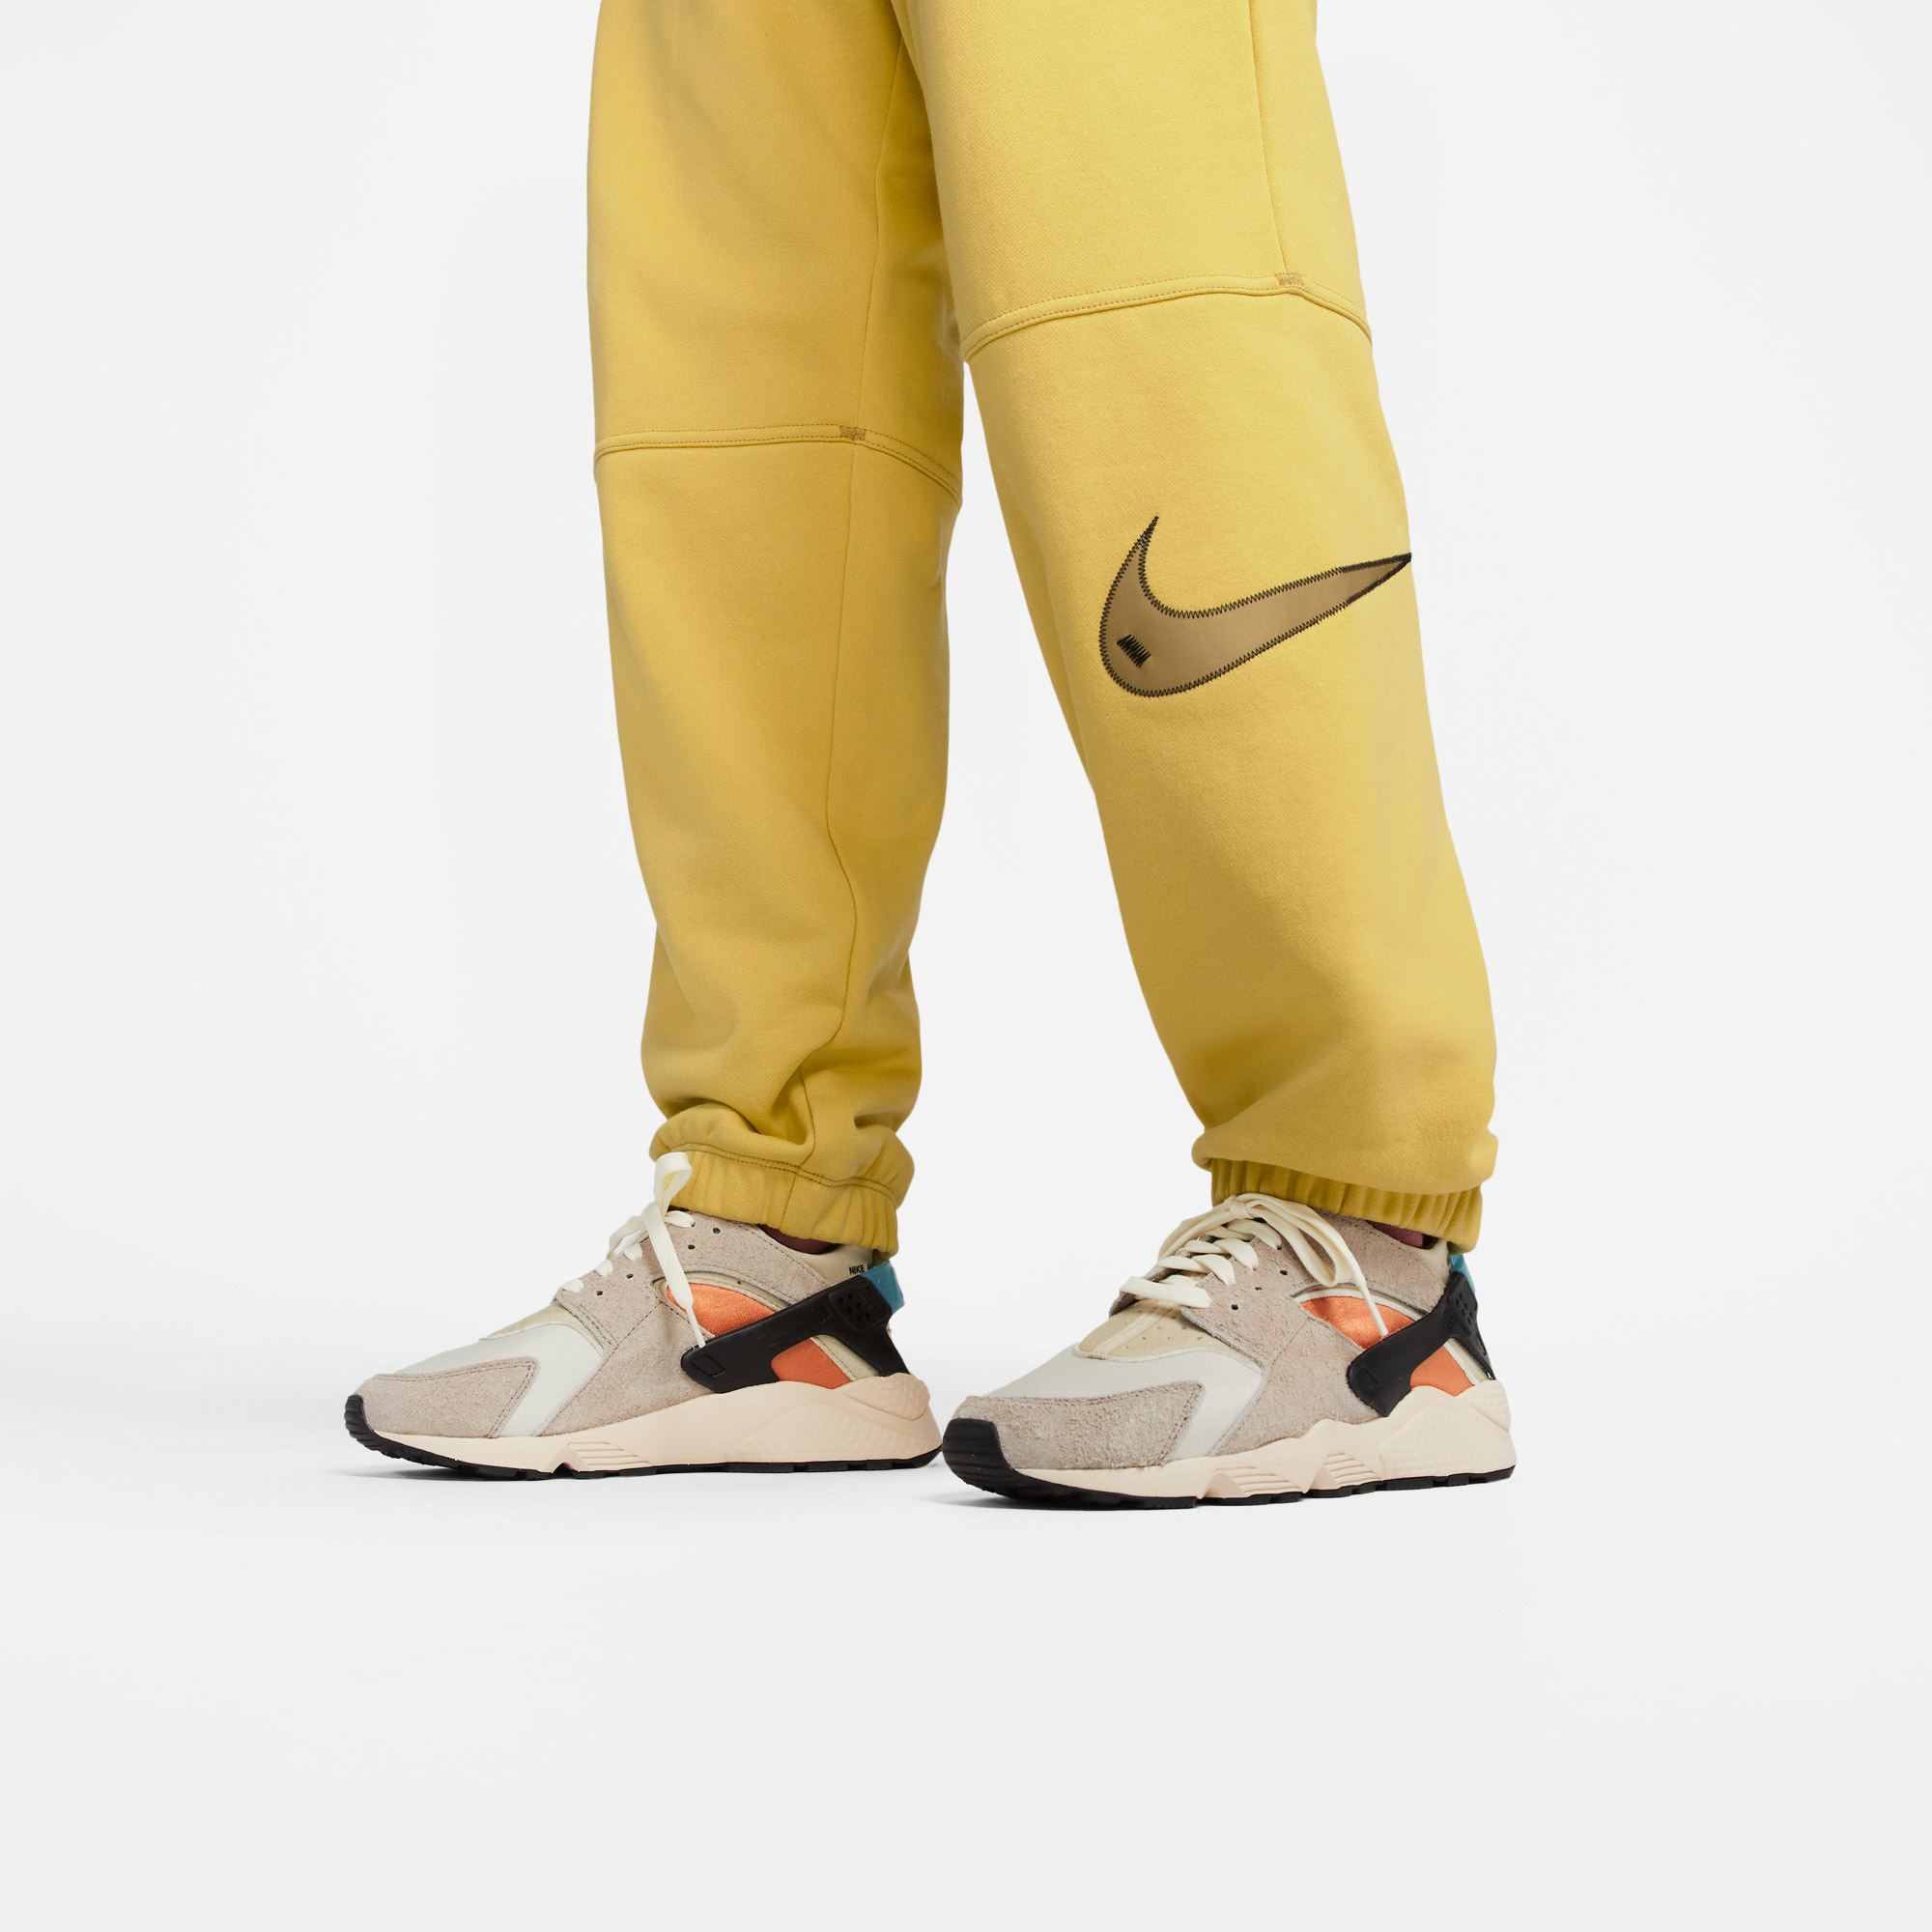 Nike Swoosh Kadın Sarı Eşofman Altı